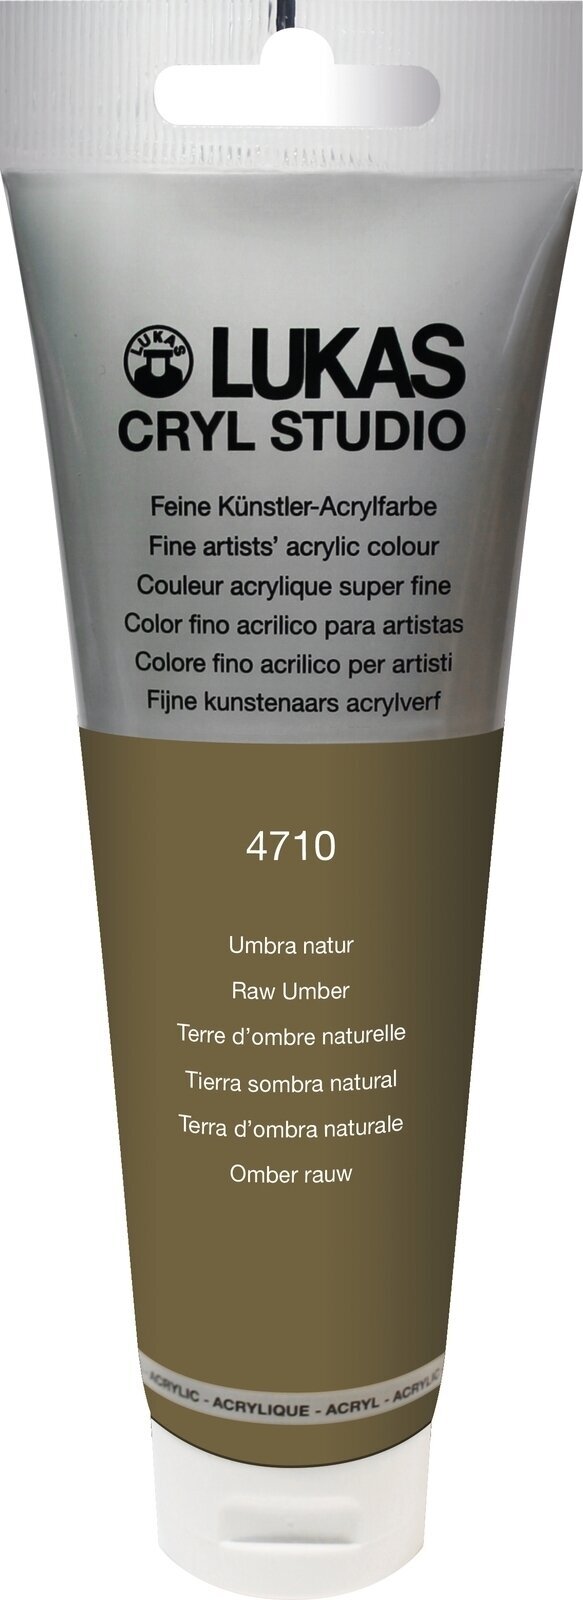 Tinta acrílica Lukas Cryl Studio Tinta acrílica 125 ml Raw Umber